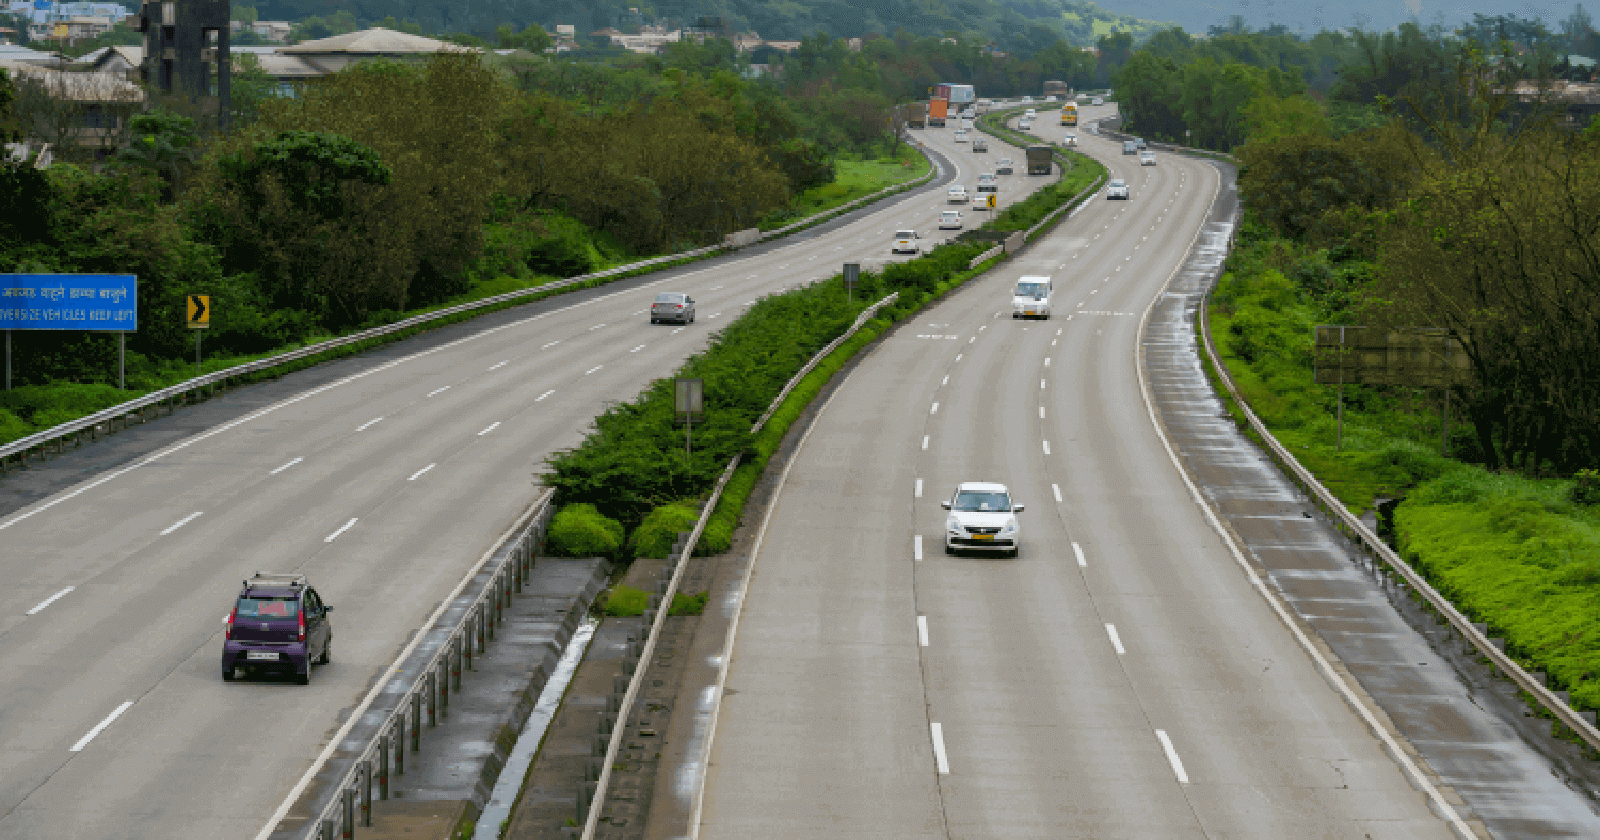 Road Tax in Maharashtra